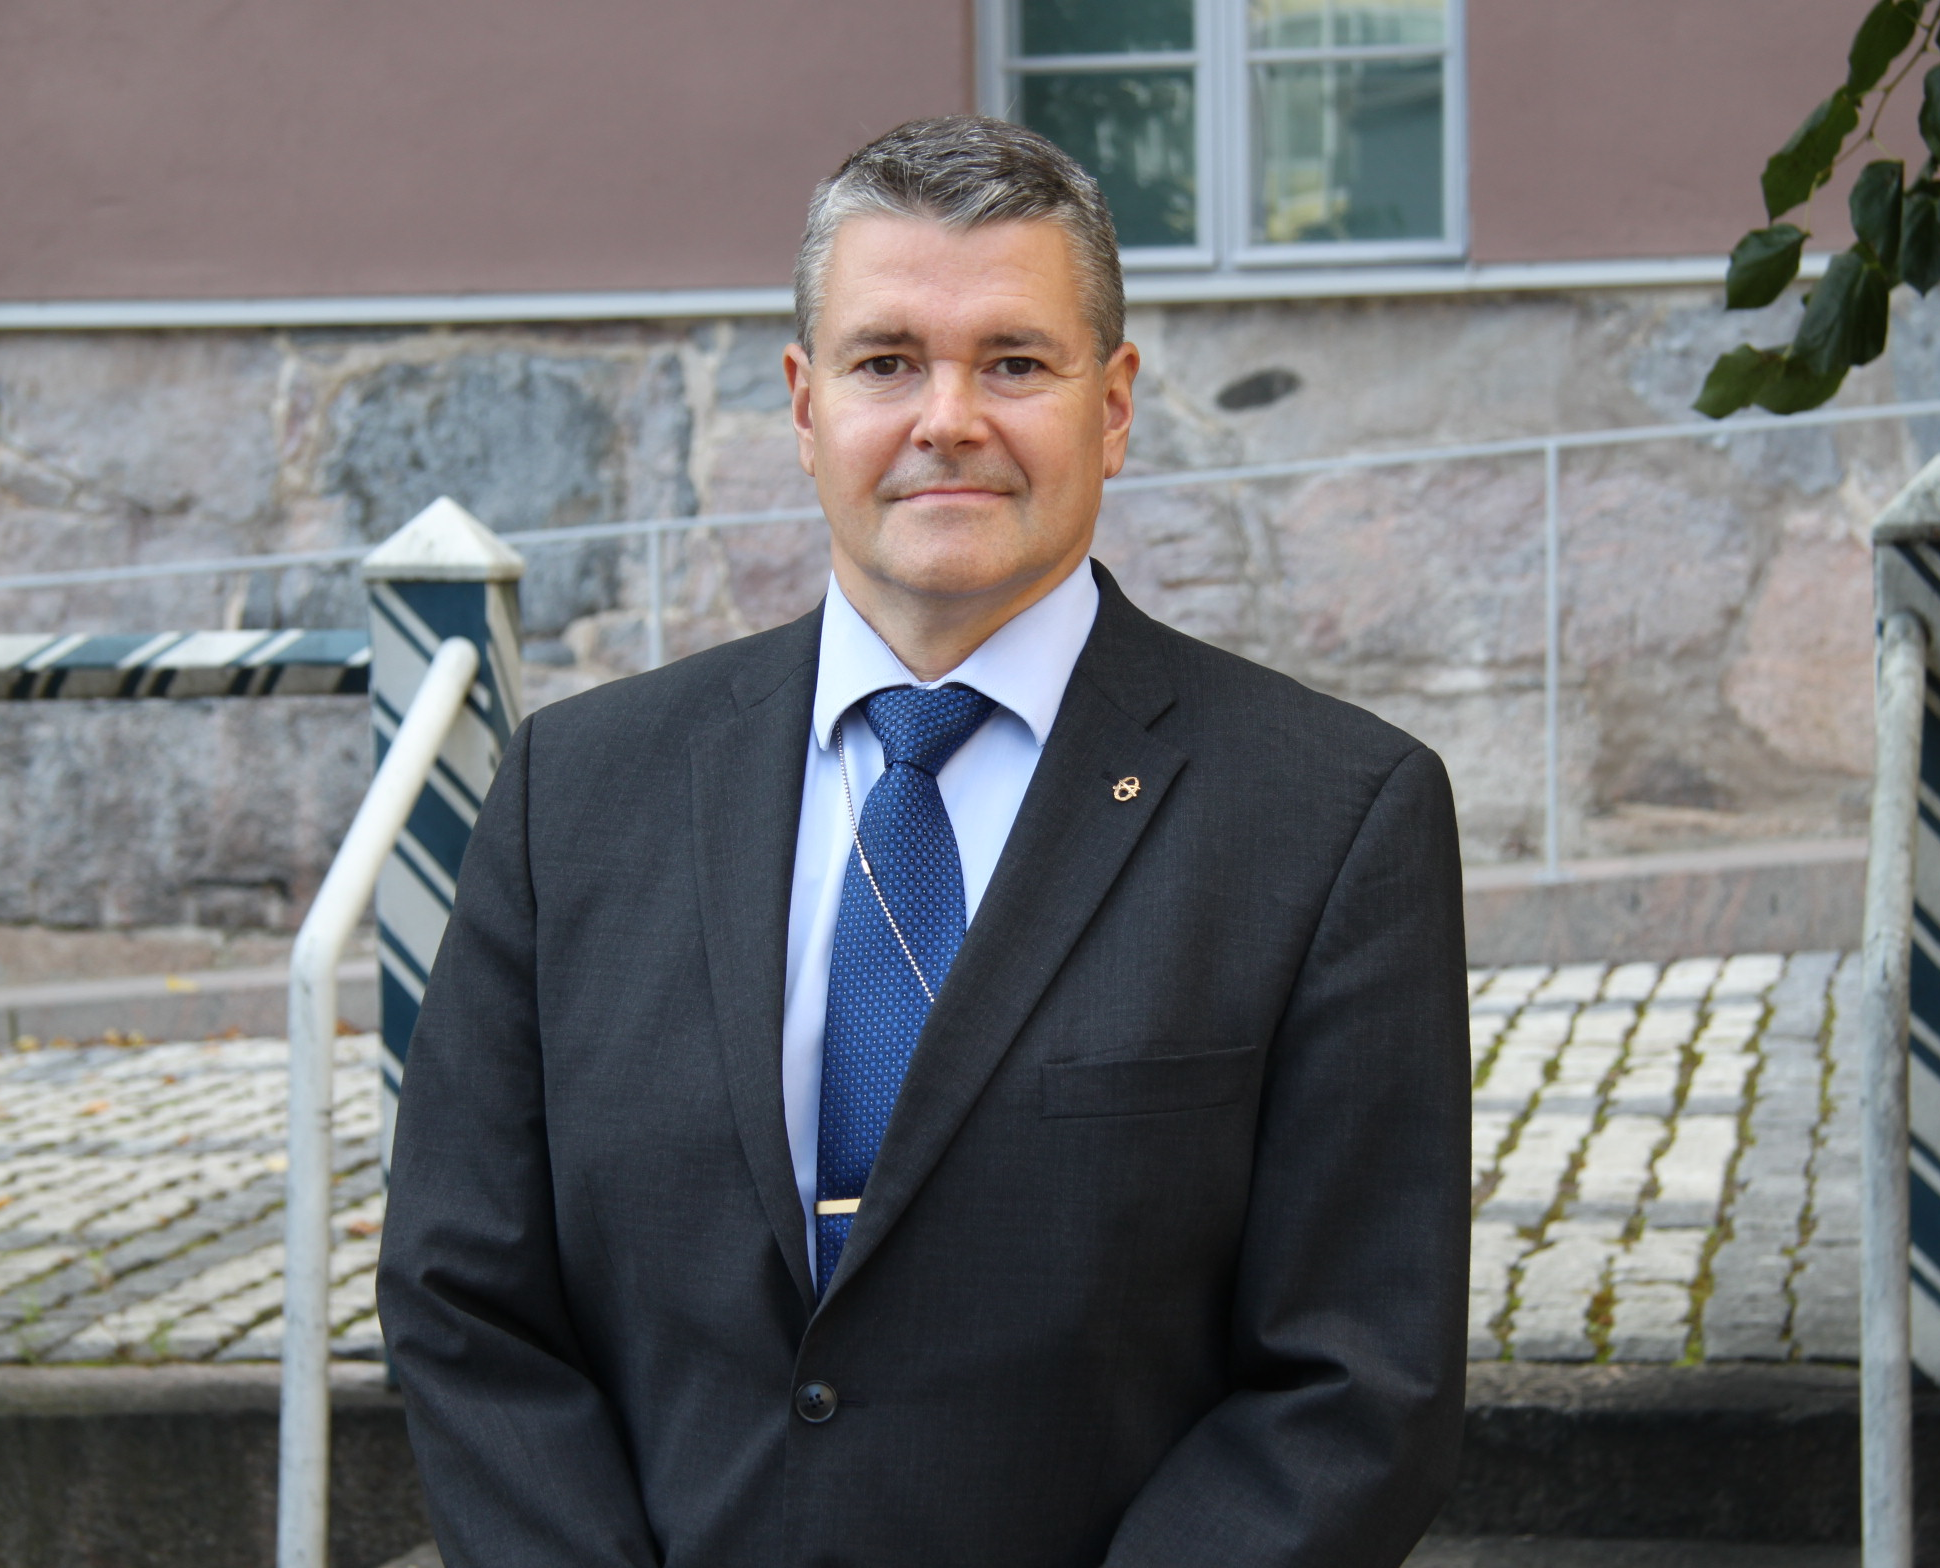 Valokuva: Turvallisuuskomitean sihteeristön pääsihteeri (2020-2023) Petri Toivonen tummassa puvussa ja sinisessä solmiossa.